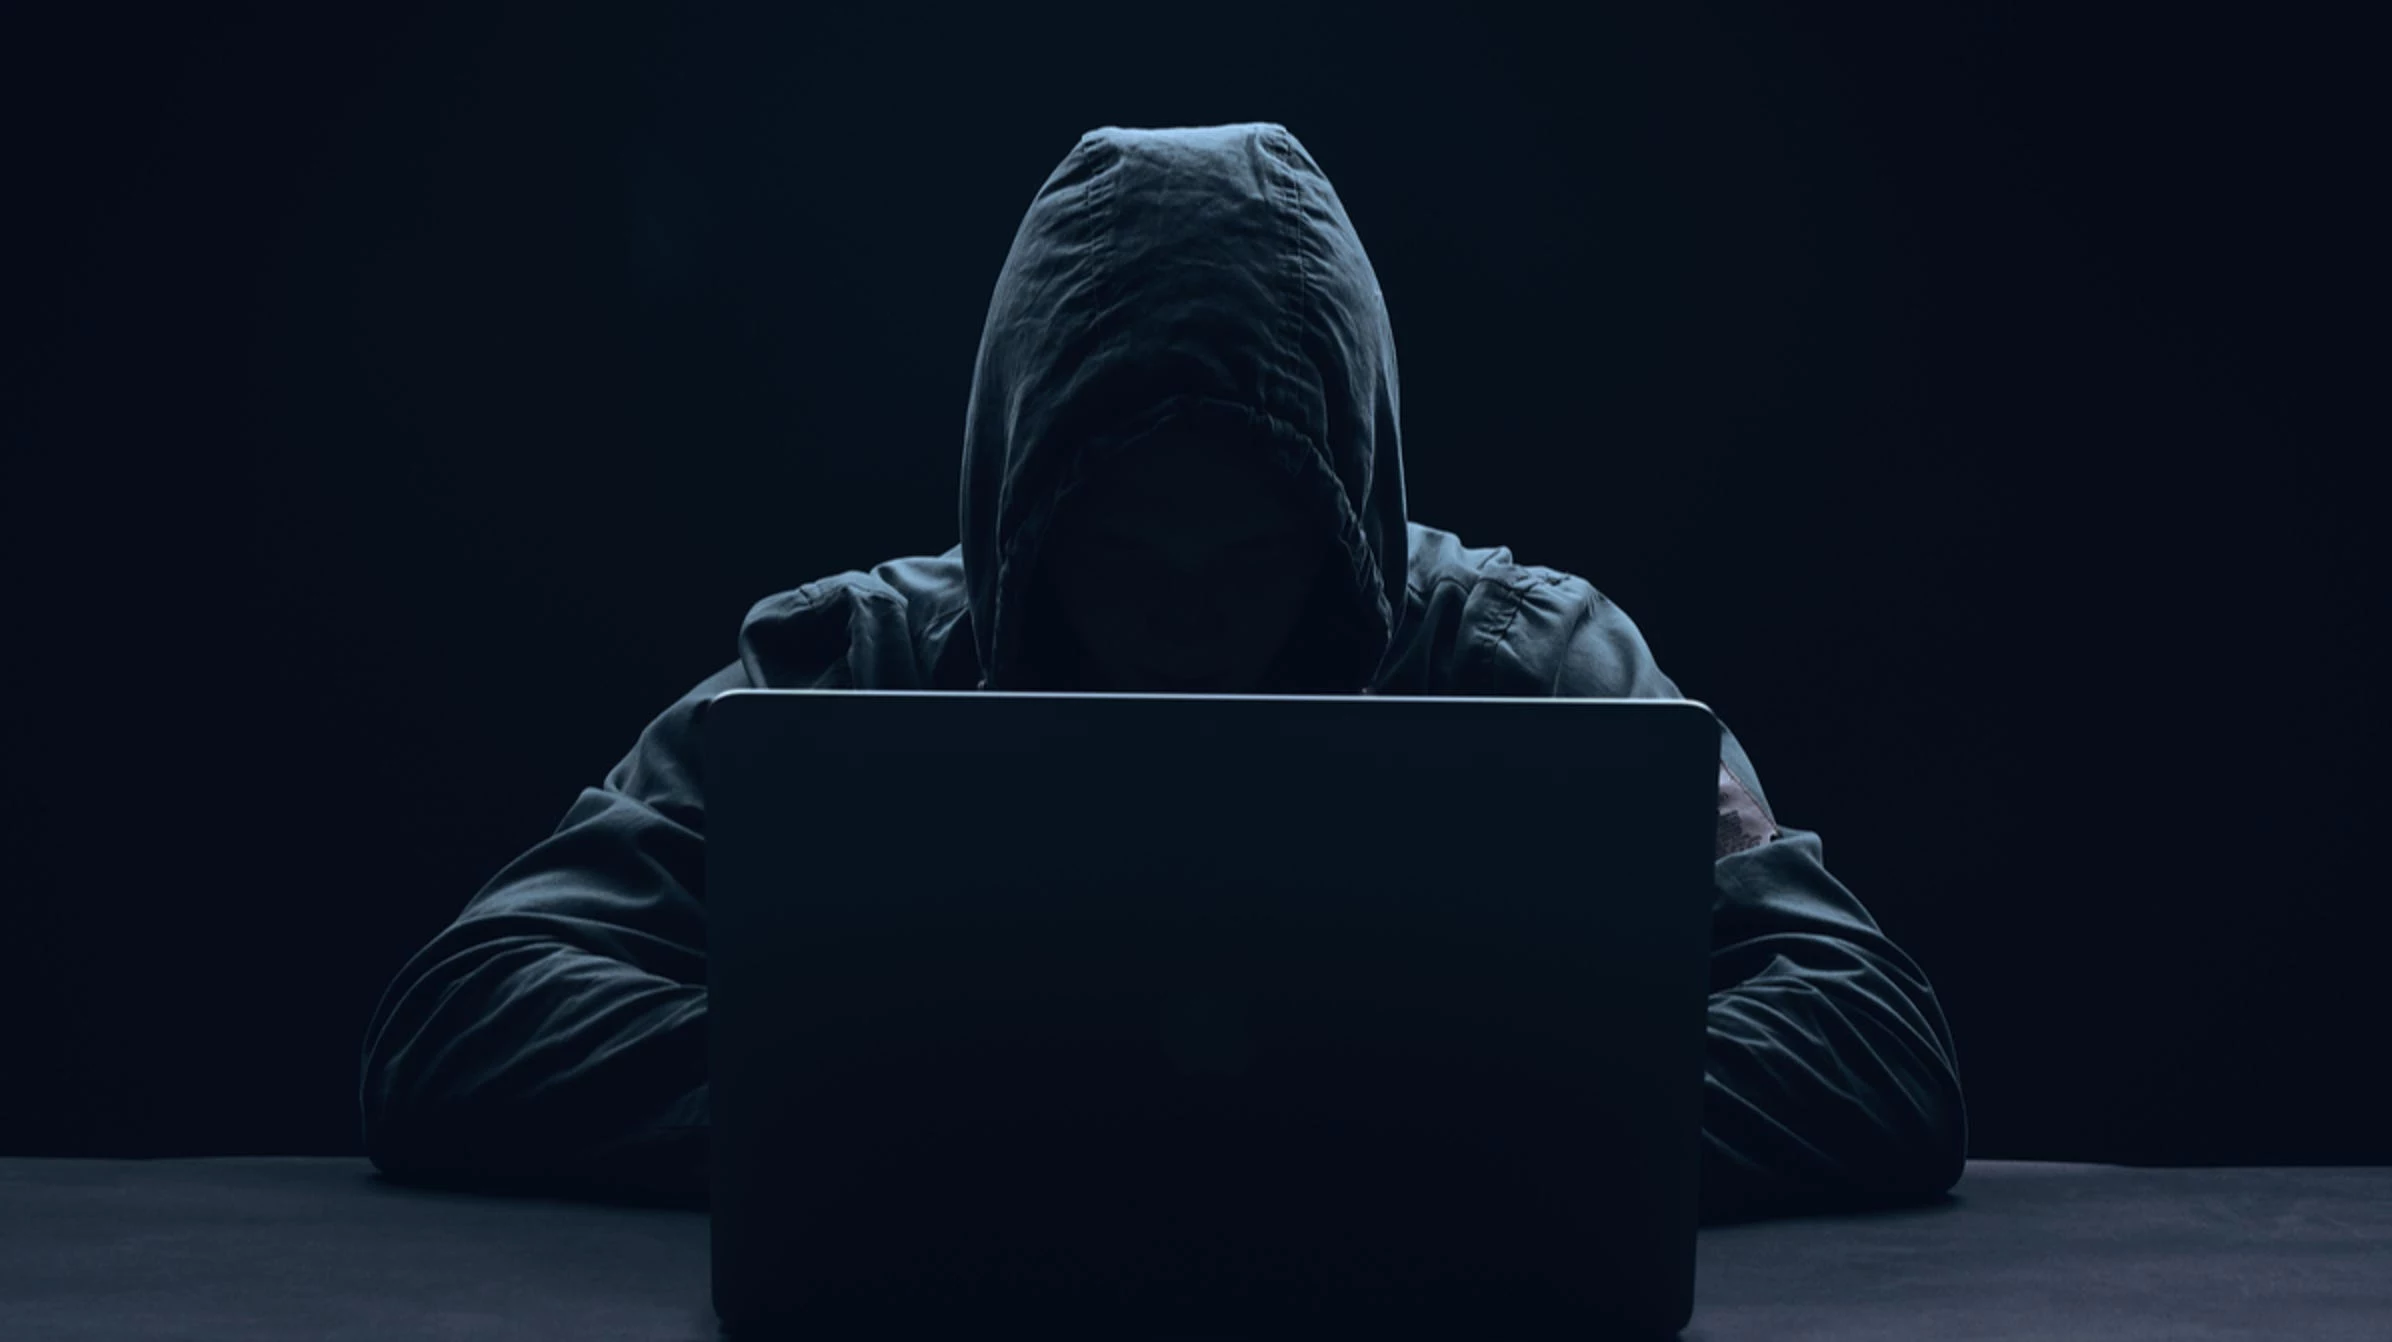 Hackerii folosesc fisiere RTF in campaniile de phishing